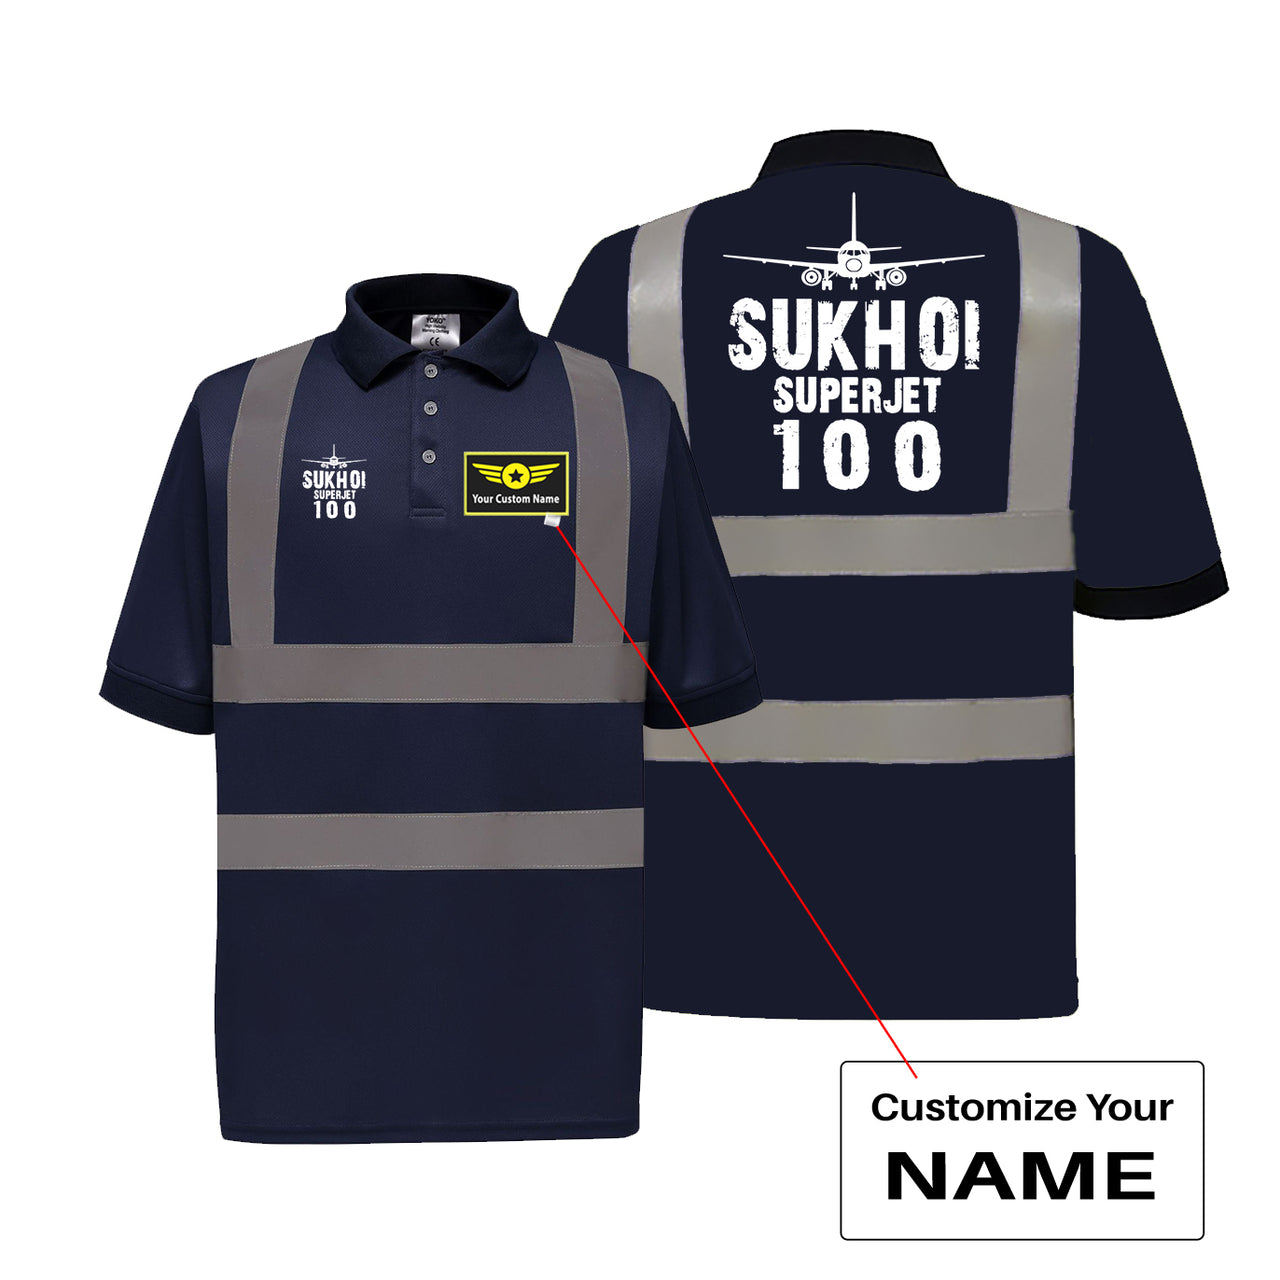 Sukhoi Superjet 100 & Plane Designed Reflective Polo T-Shirts